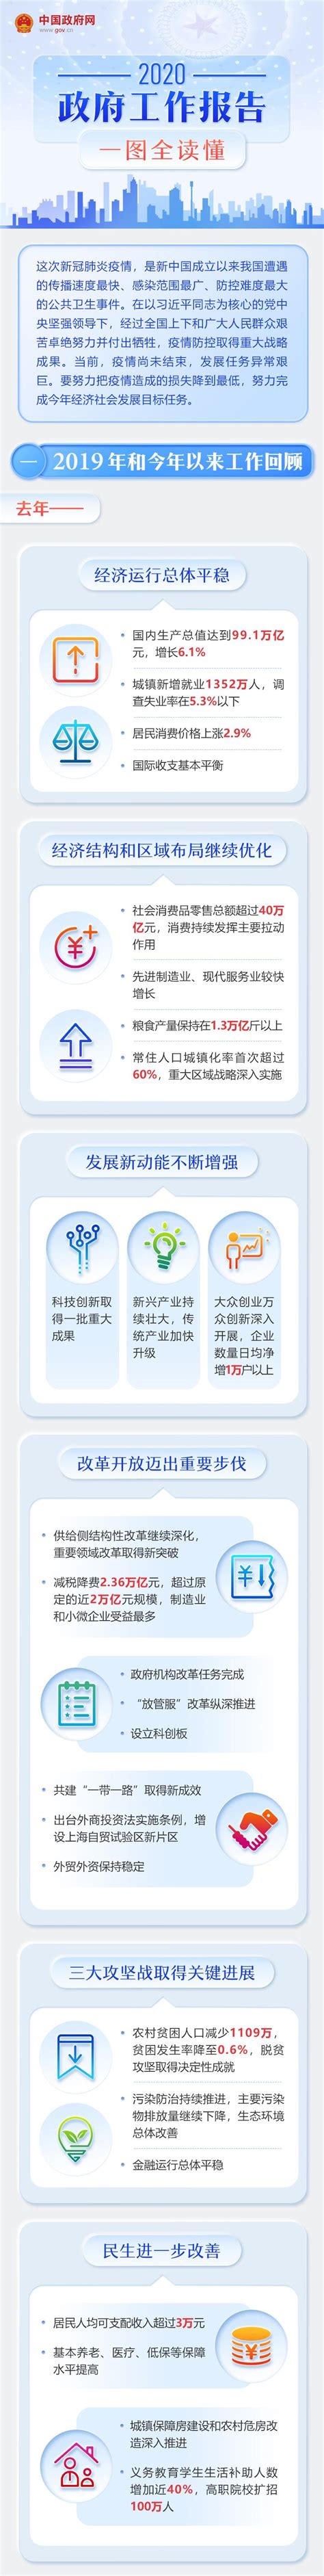 一图读懂 | 2020广州市政府工作报告